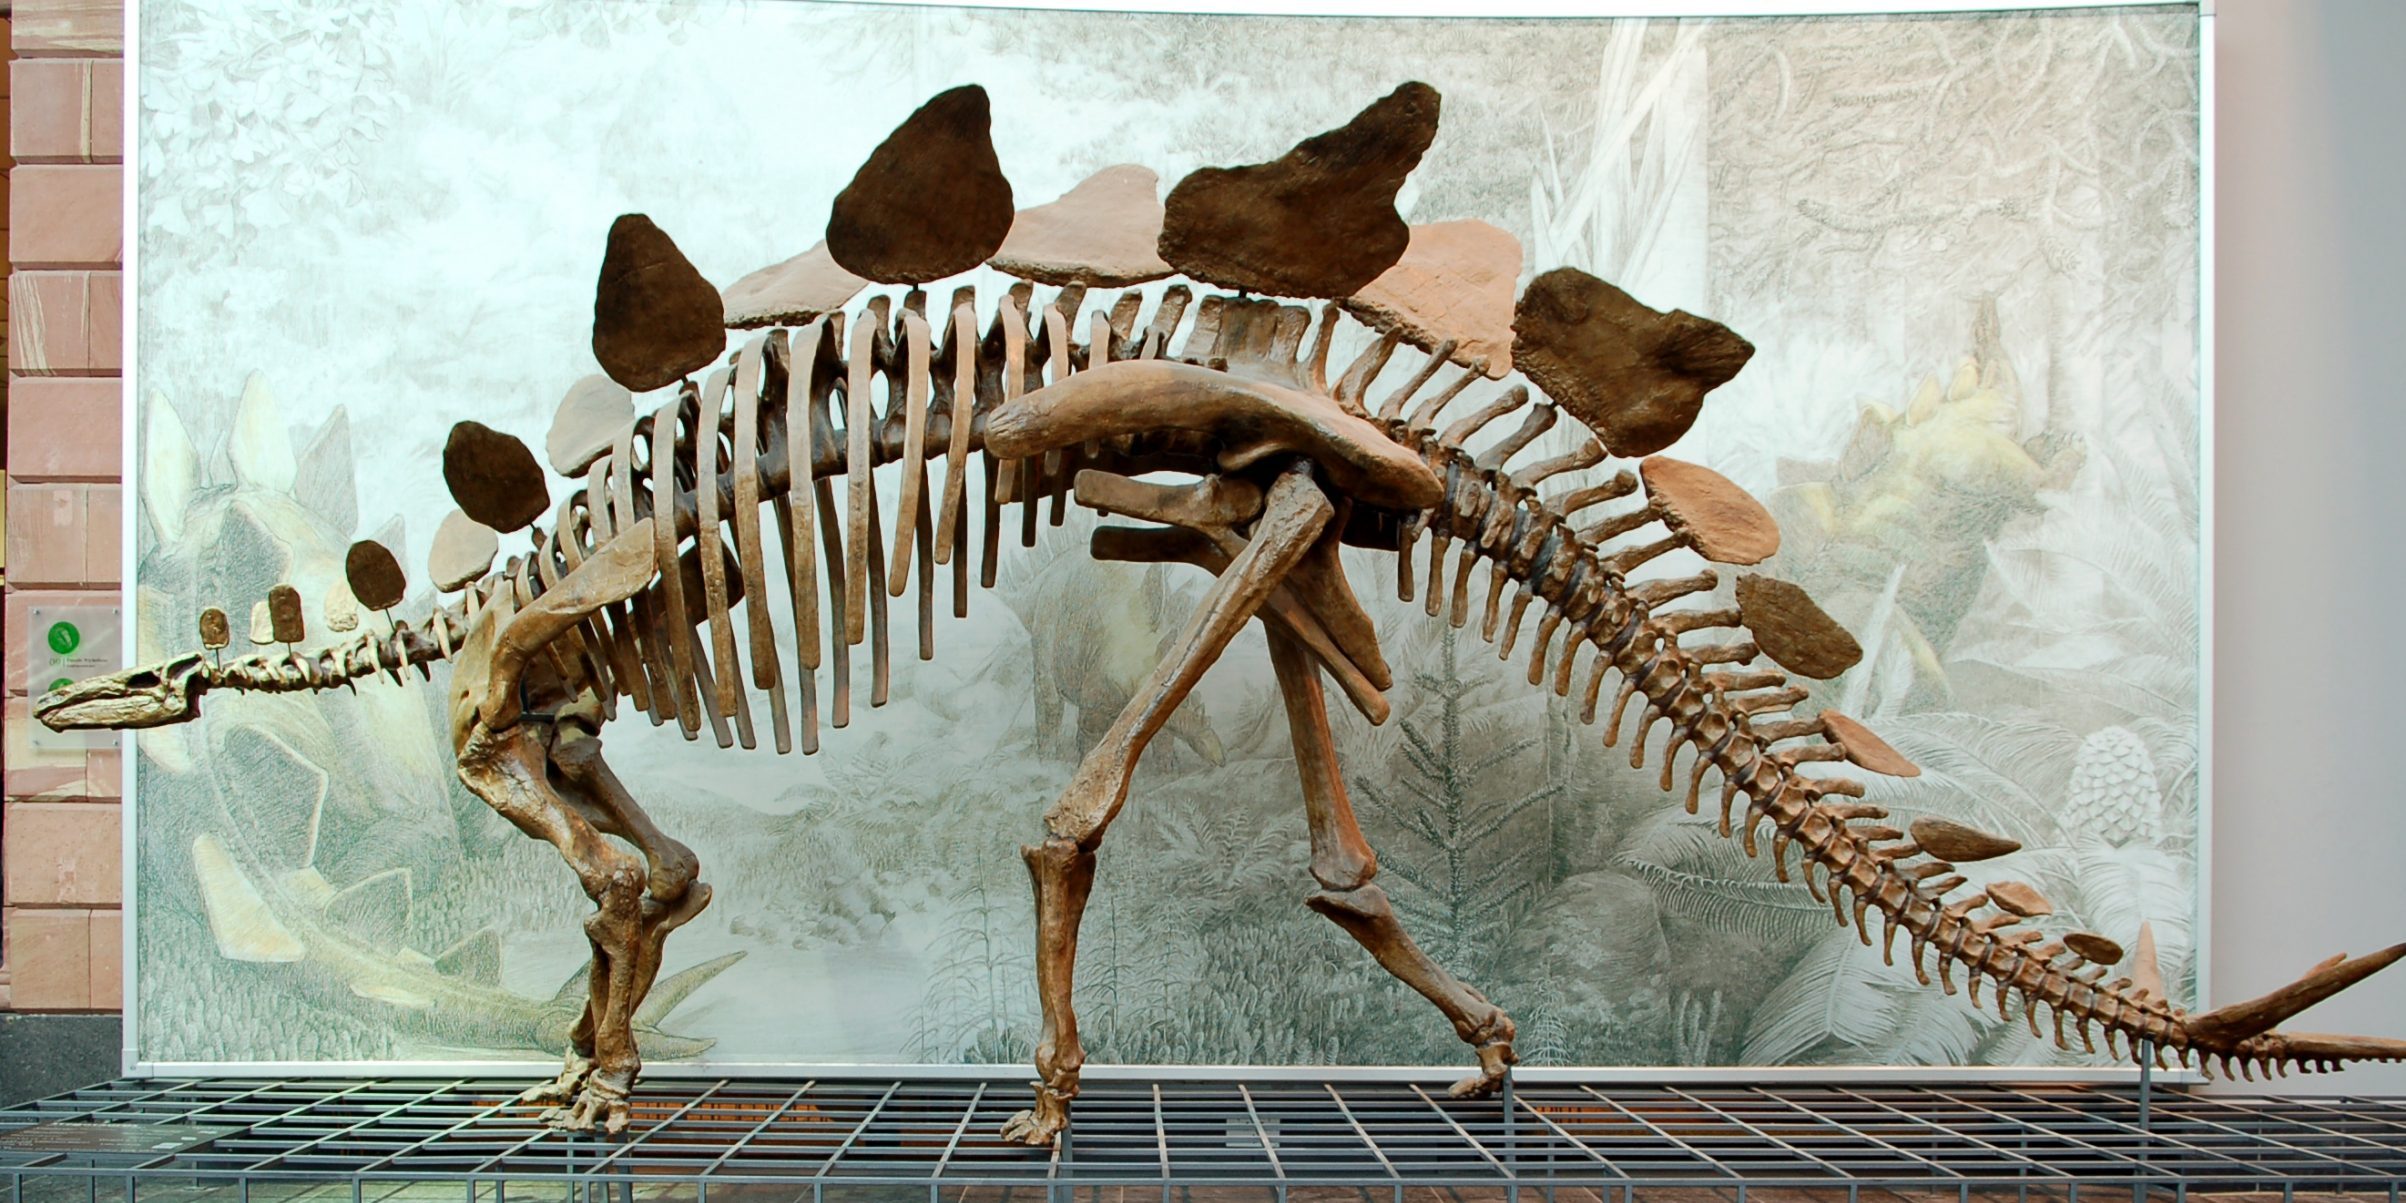 12 заблуждений о динозаврах, в которые пора перестать верить - Лайфхакер